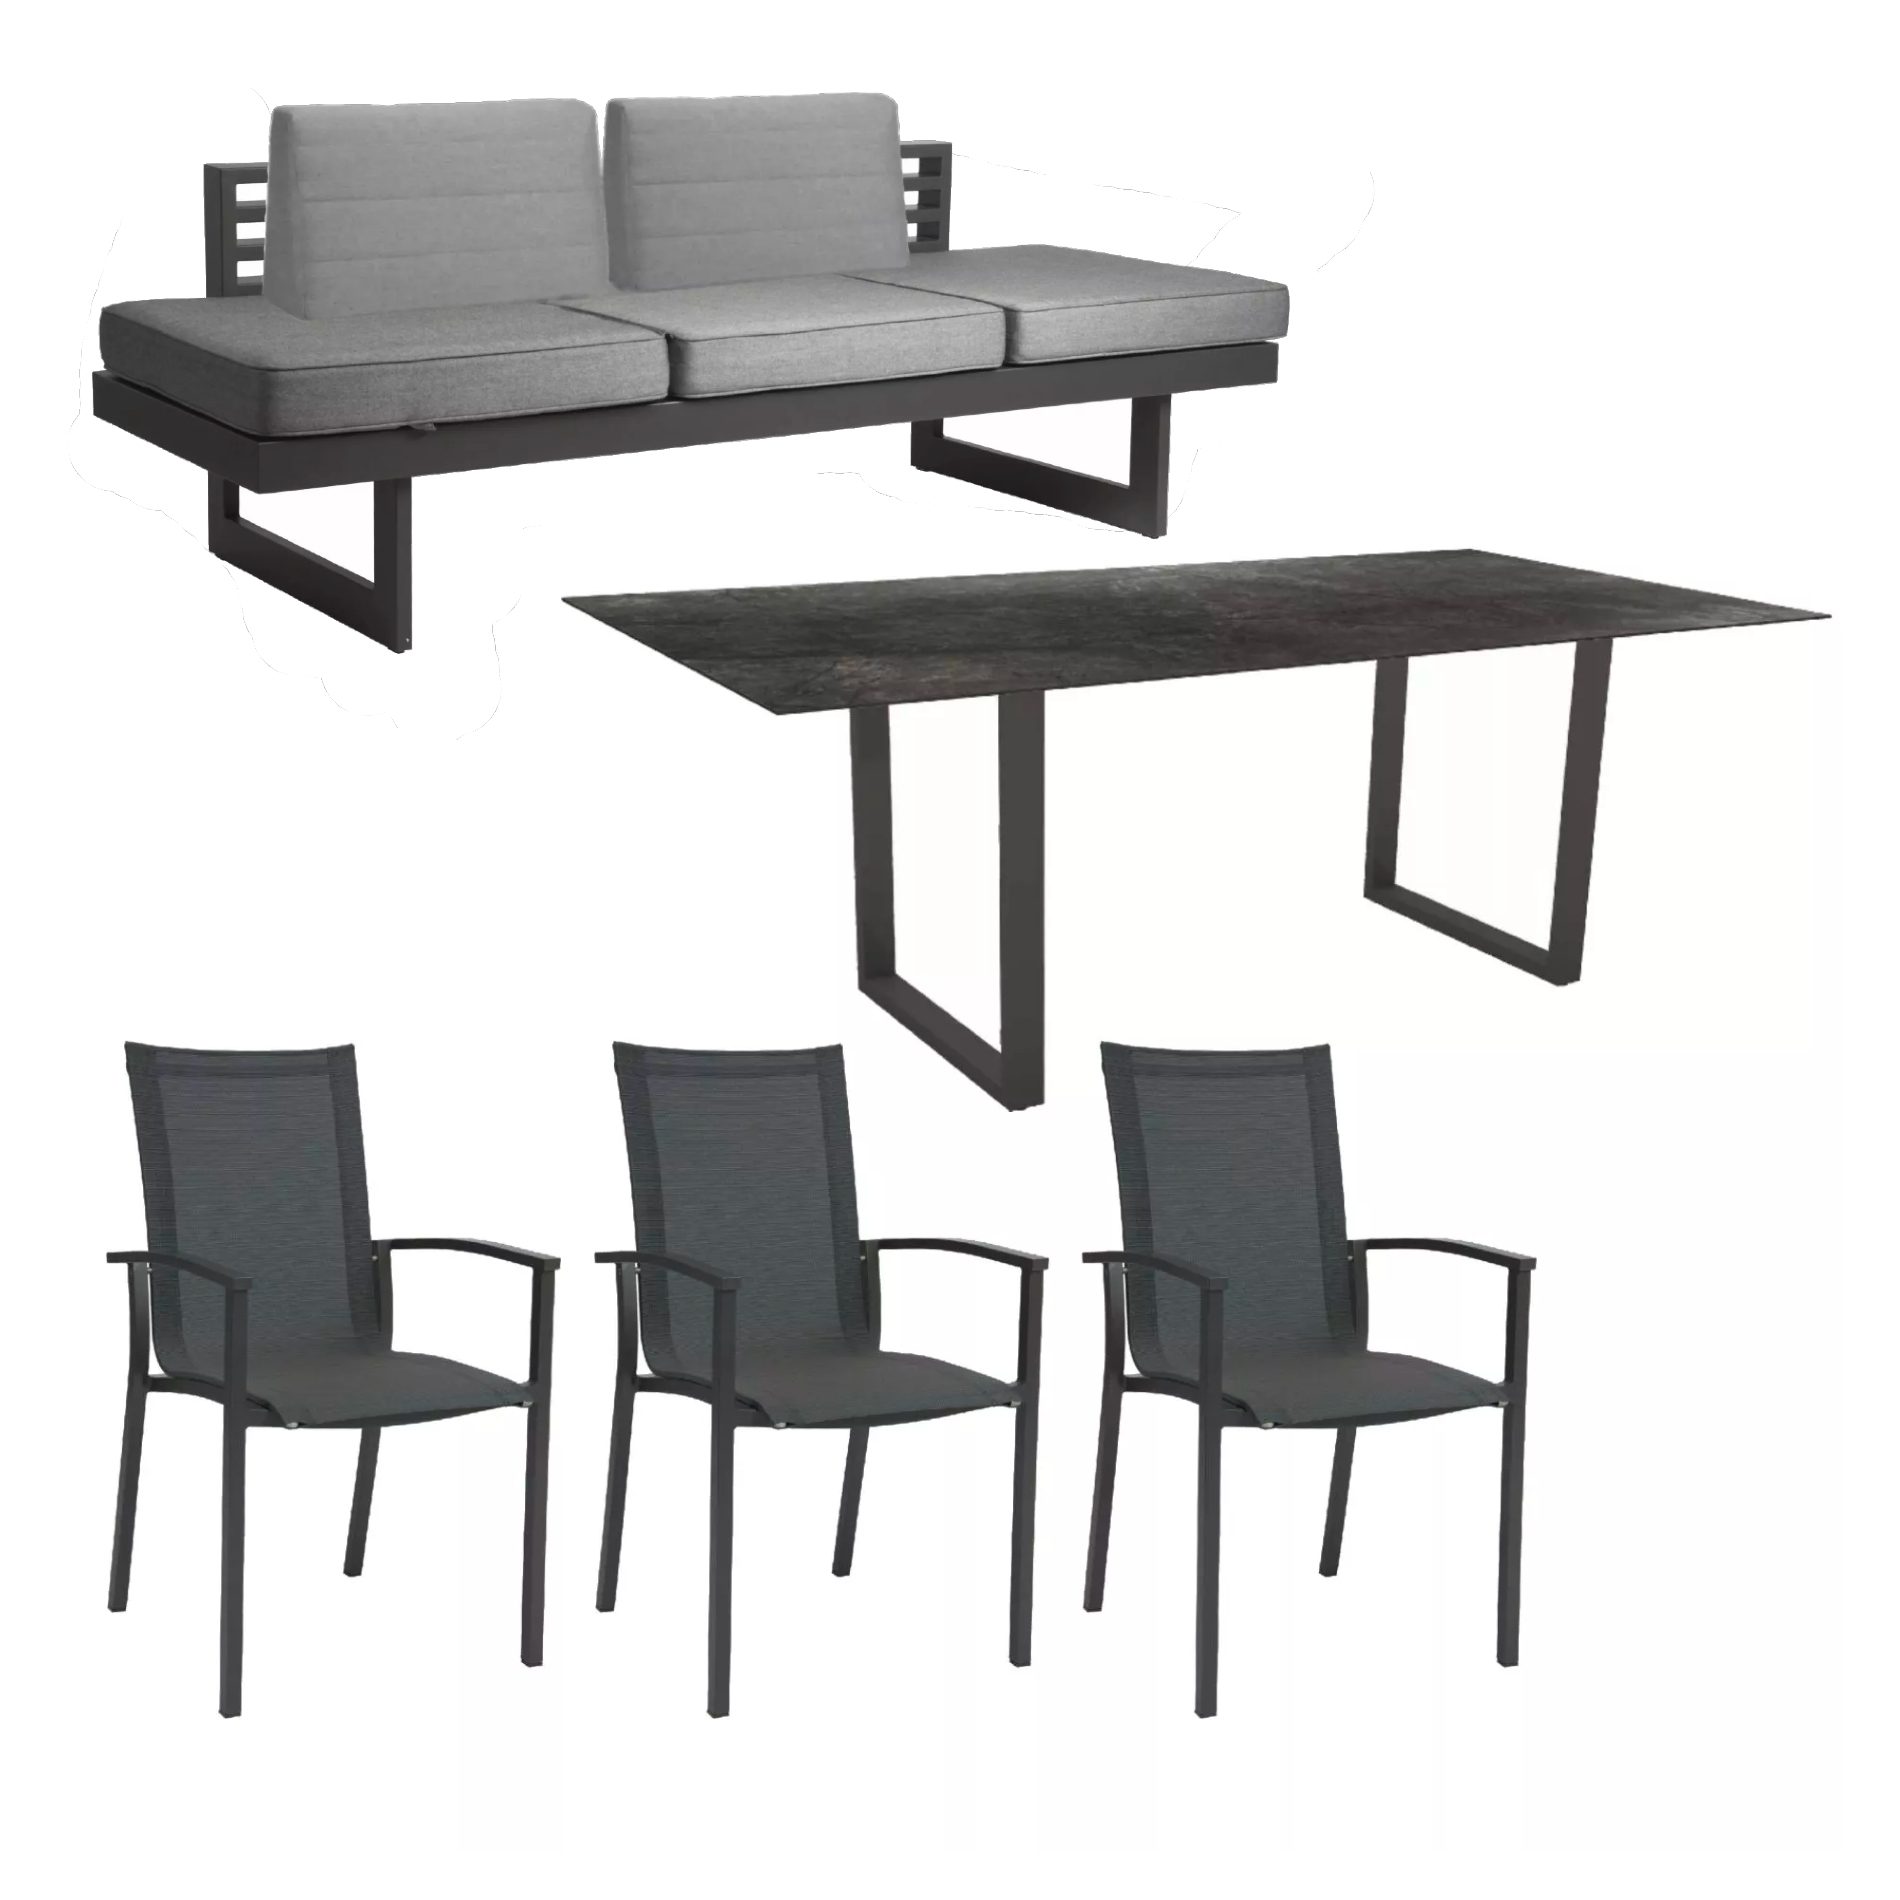 Stern "Evoee/New Holly Dining" Set mit Tisch 200x100 cm, Gestell Aluminium anthrazit, Sitzfläche Textil karbon, Polster seidengrau, Tischplatte HPL Dark Marble